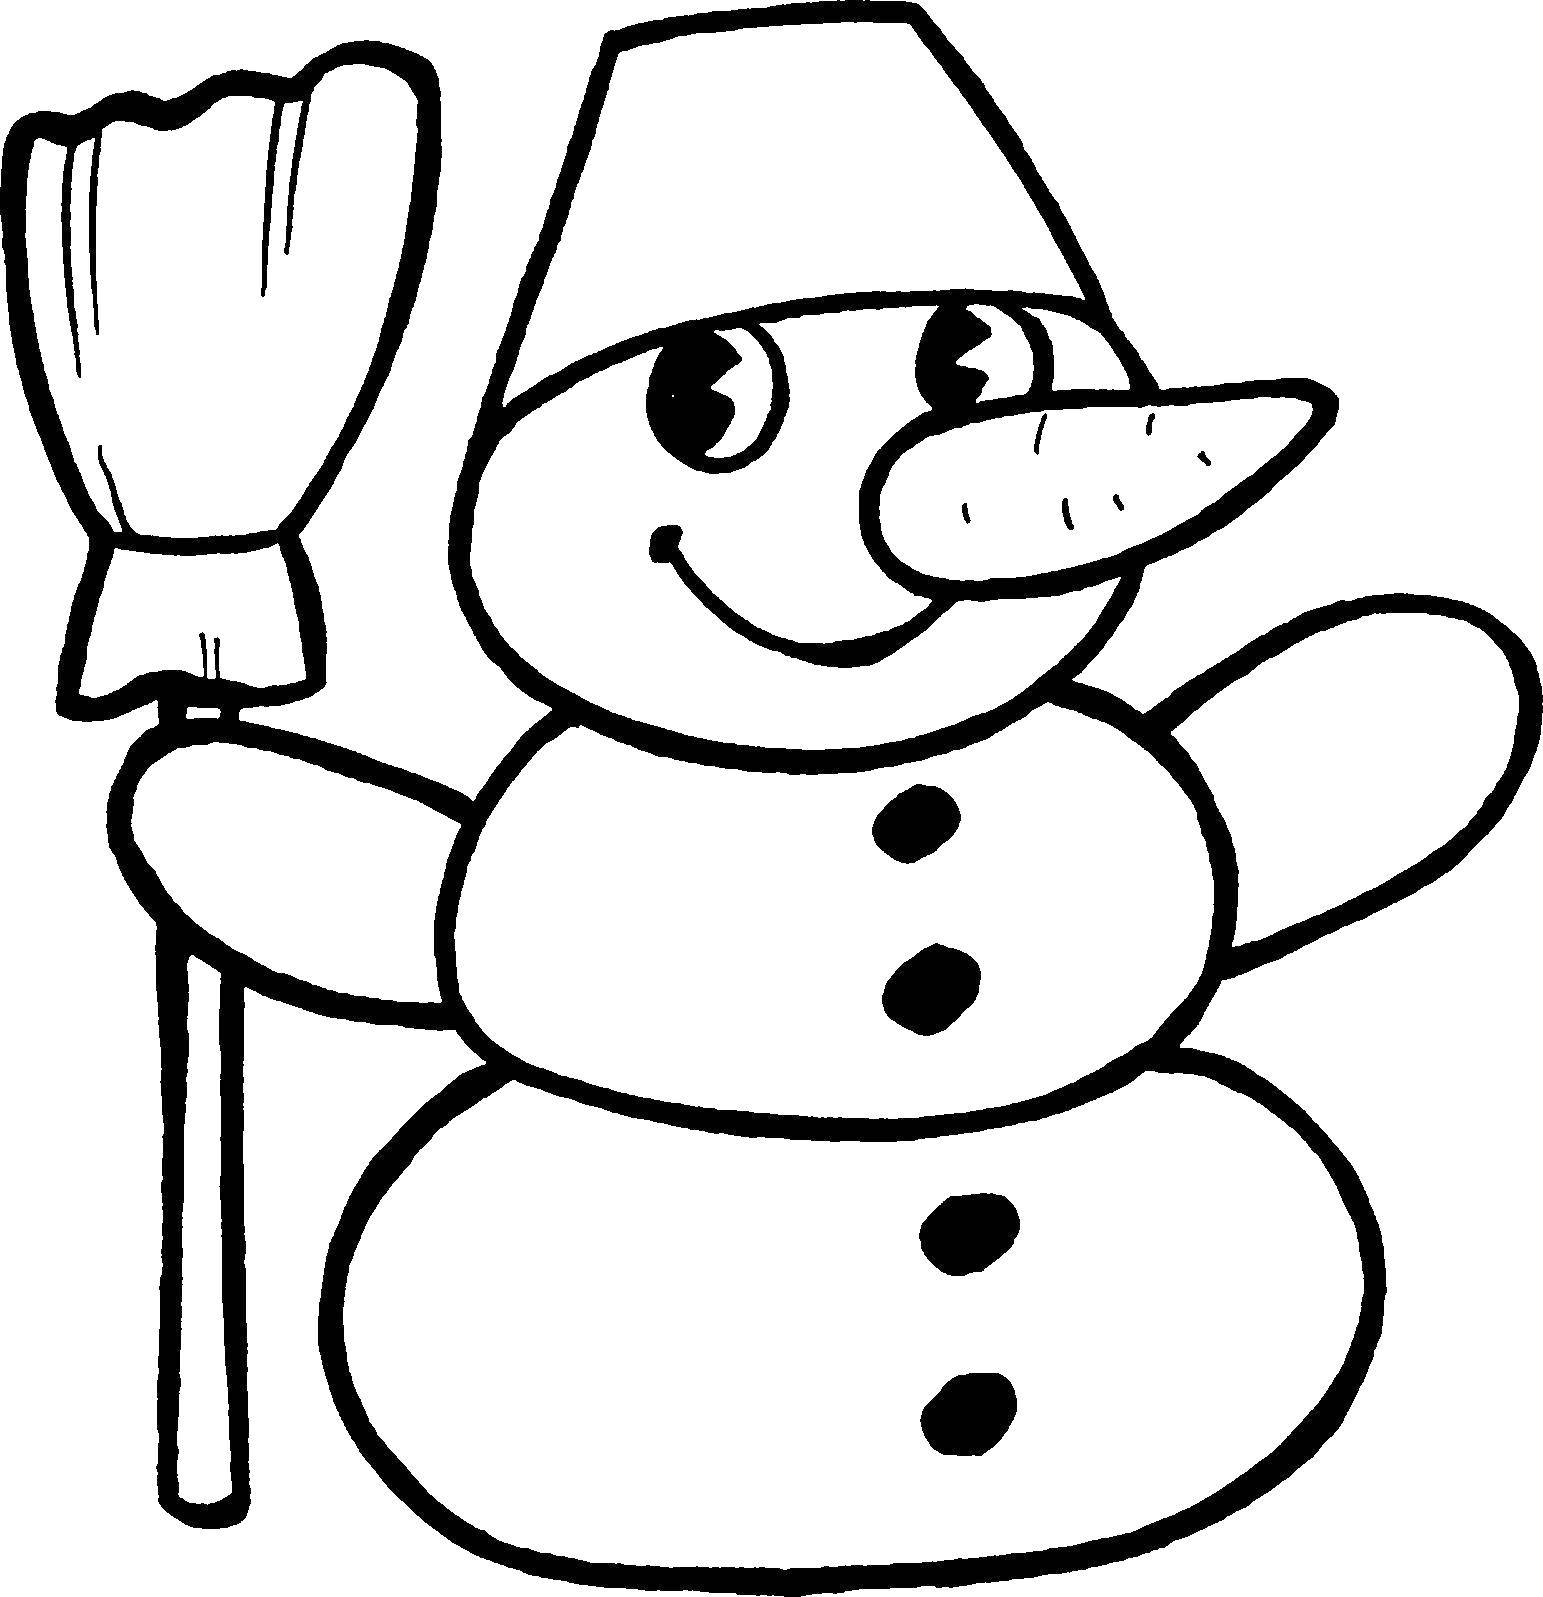 Раскраски Снеговик для детей распечатать бесплатно